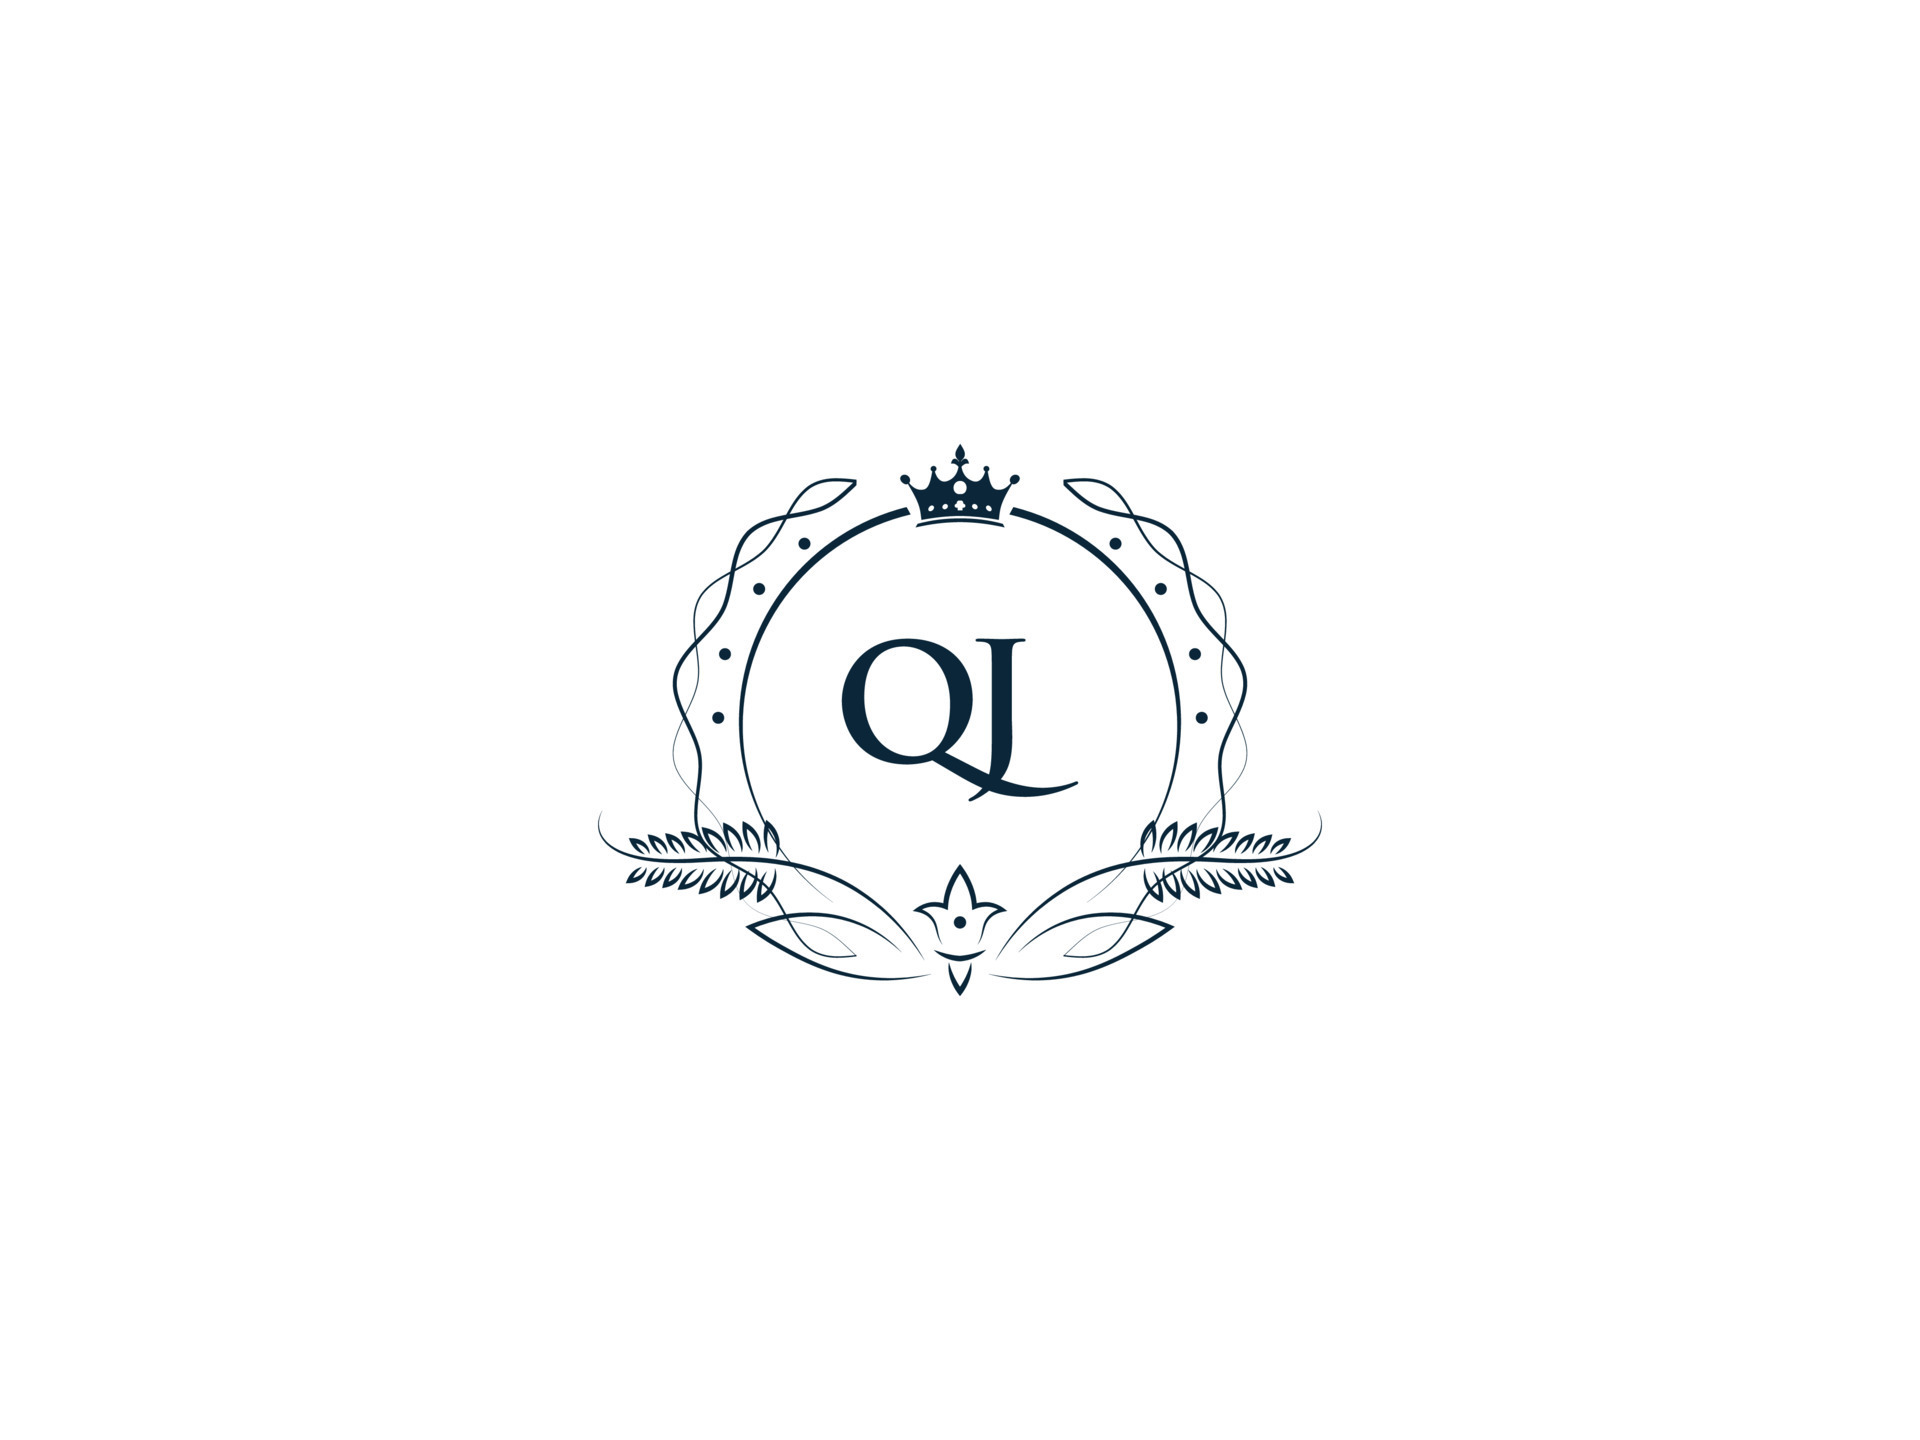 Premium Royal Crown Qj Logo, Unique Letter Qj jq Logo Icon Vector Image ...